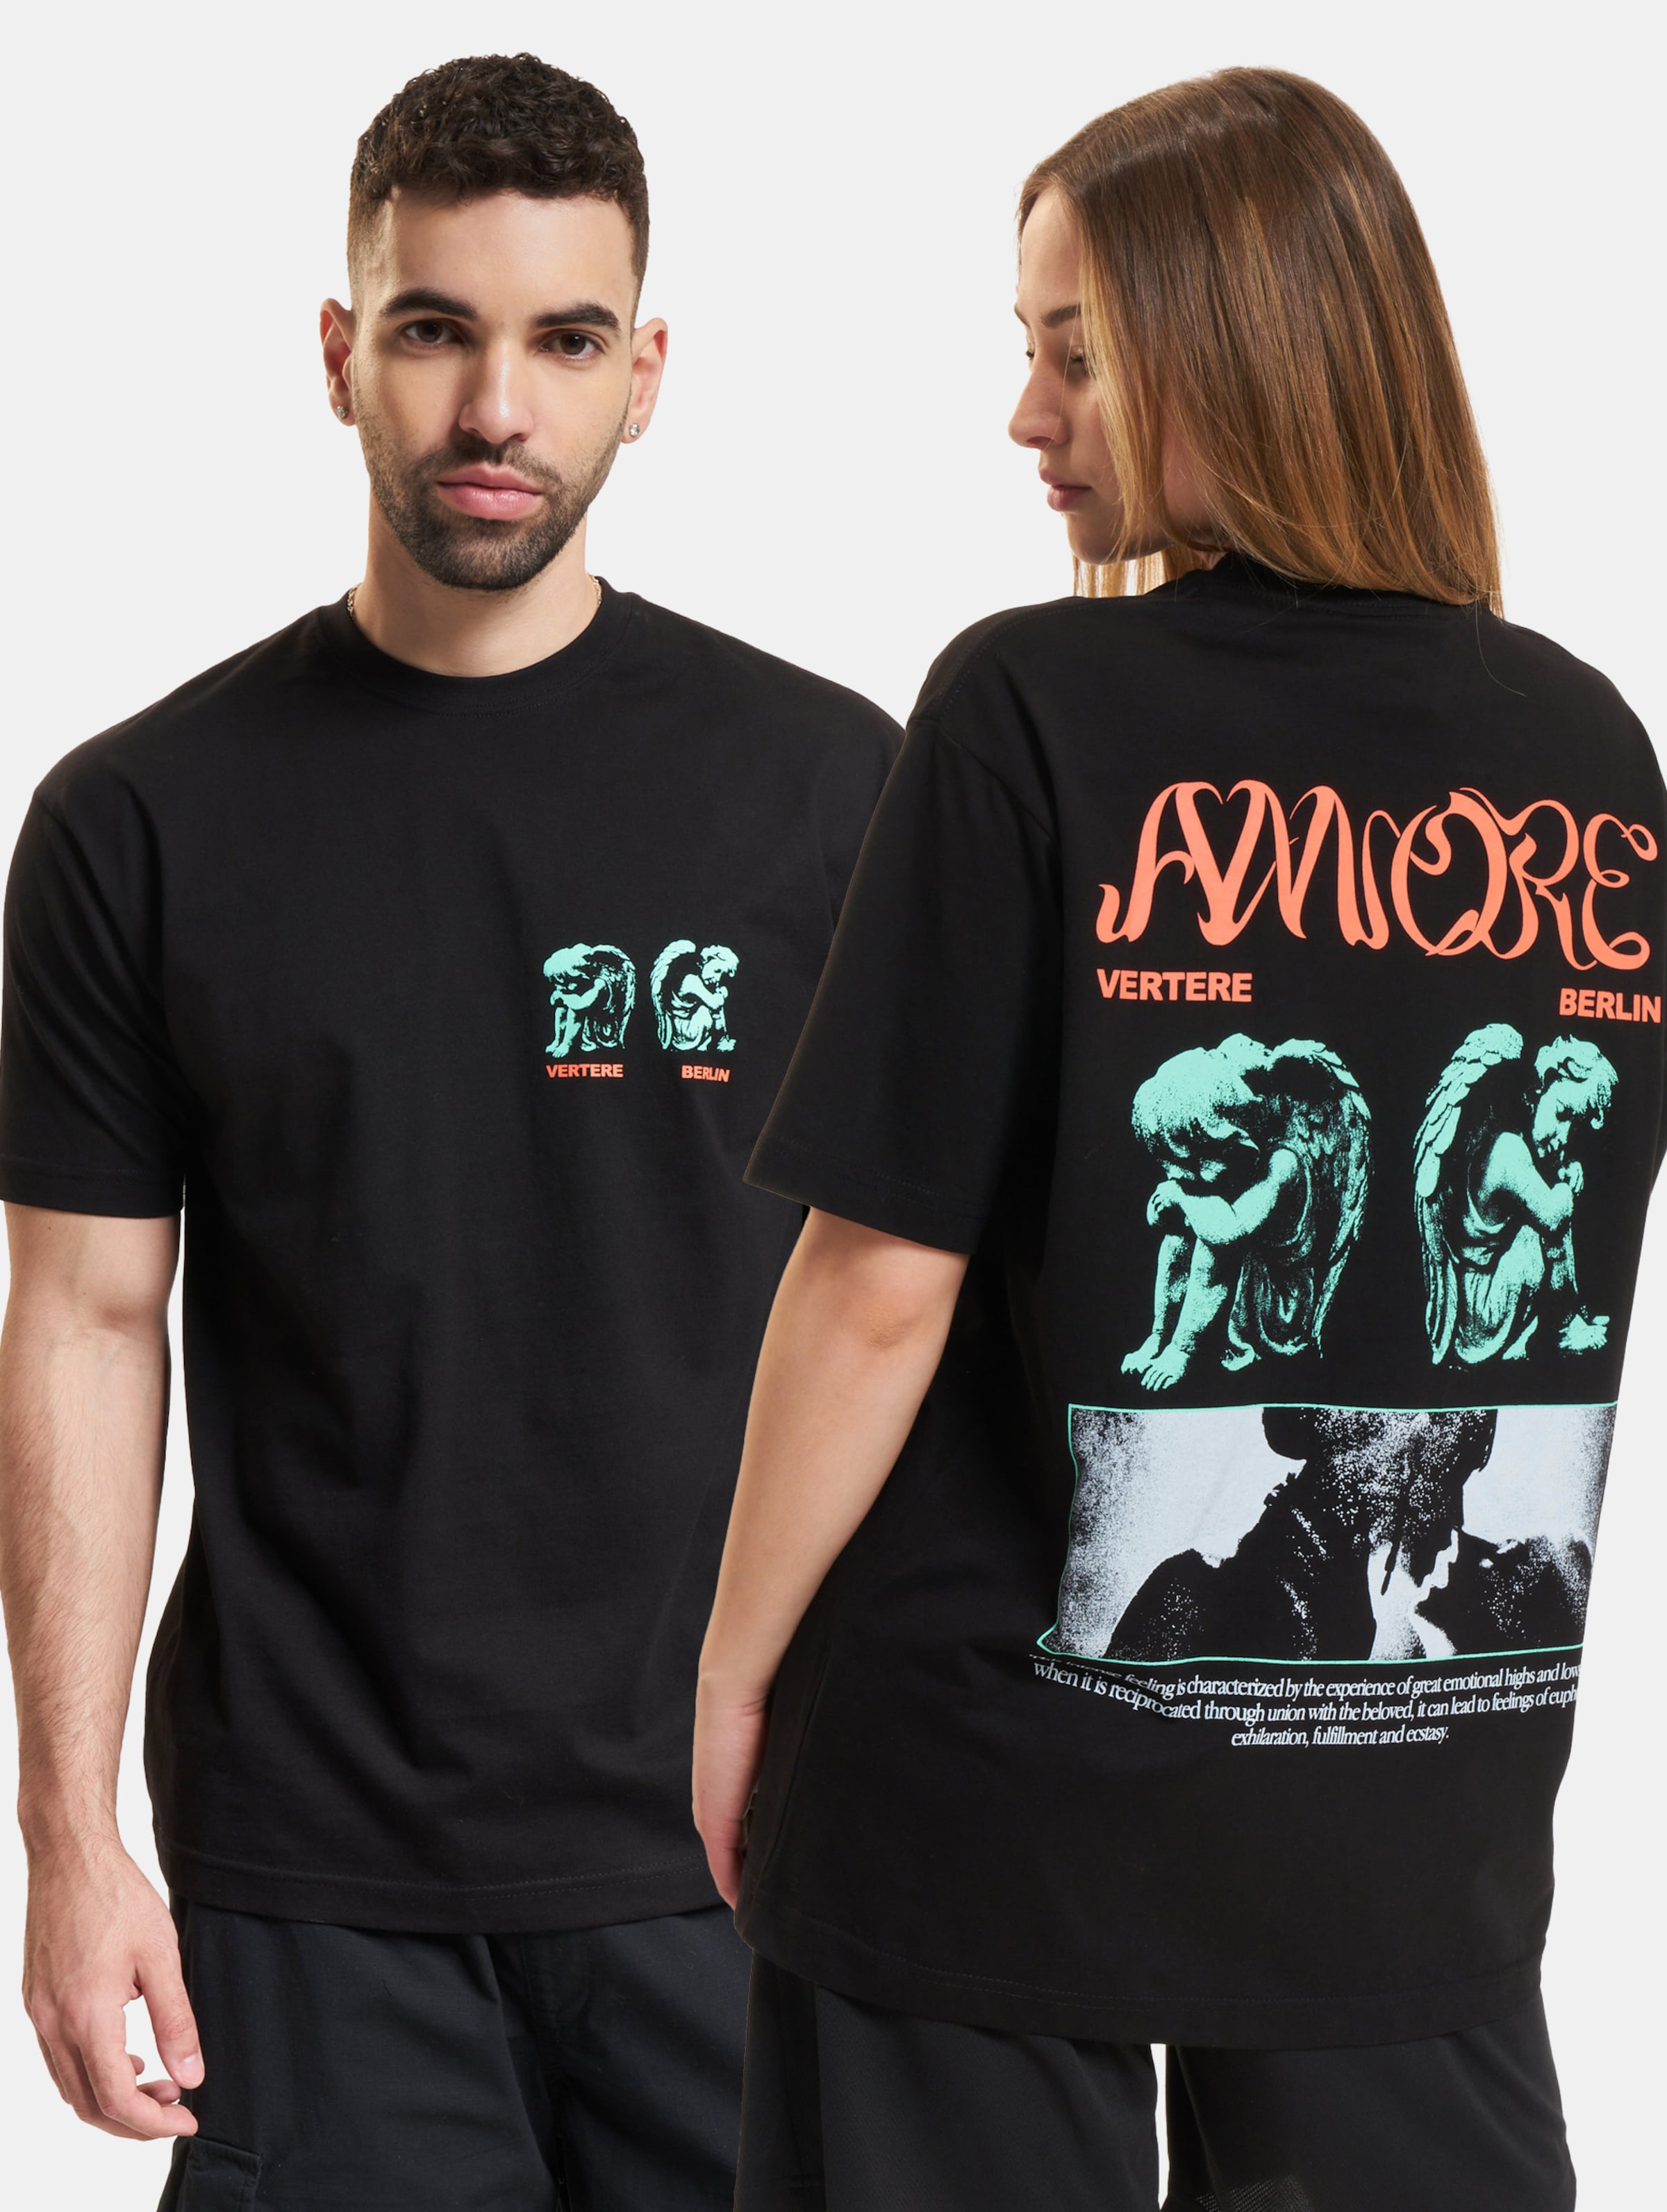 Vertere Berlin Amore T-Shirt Frauen,Männer,Unisex op kleur zwart, Maat S